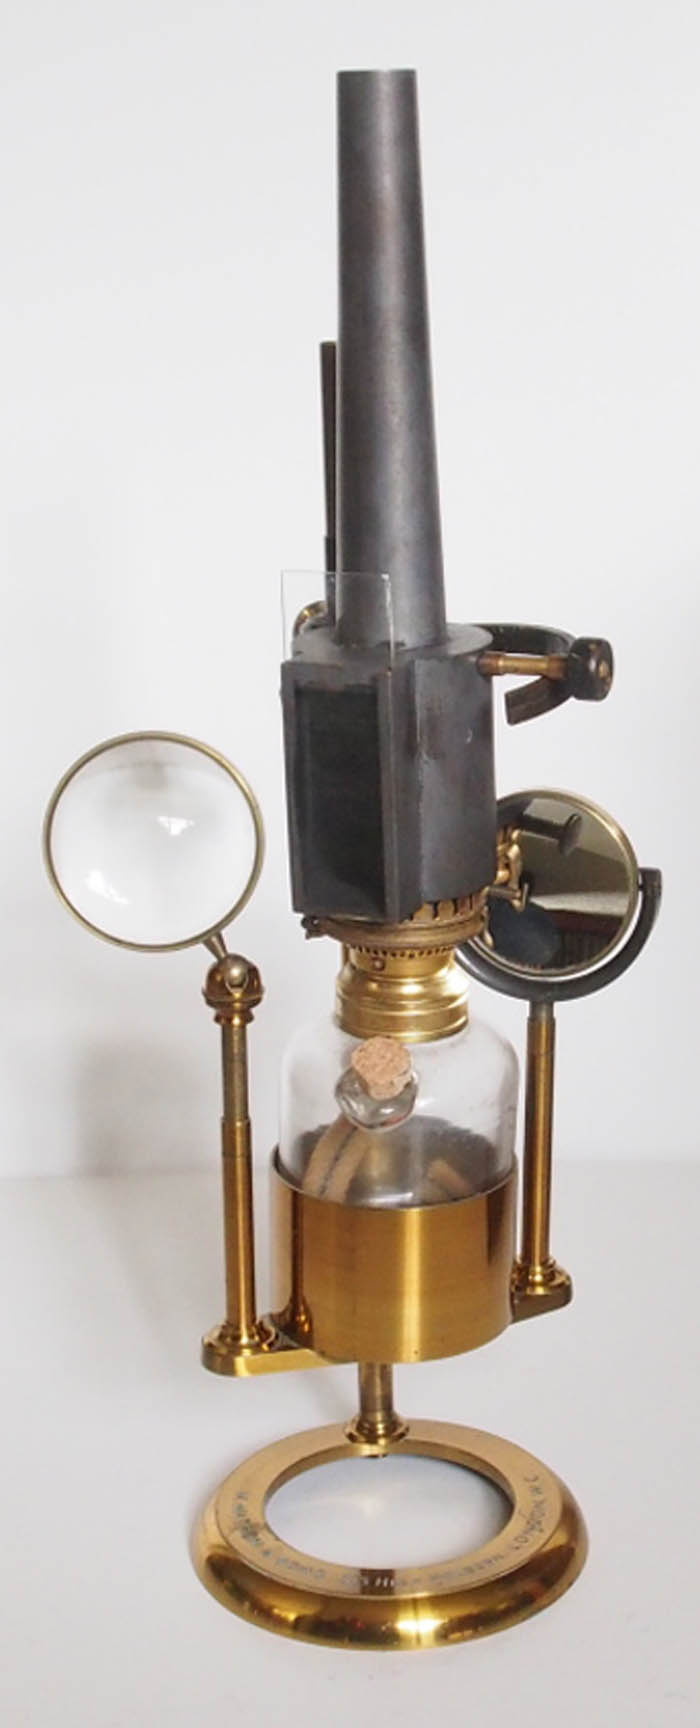 Watson gas Lamp